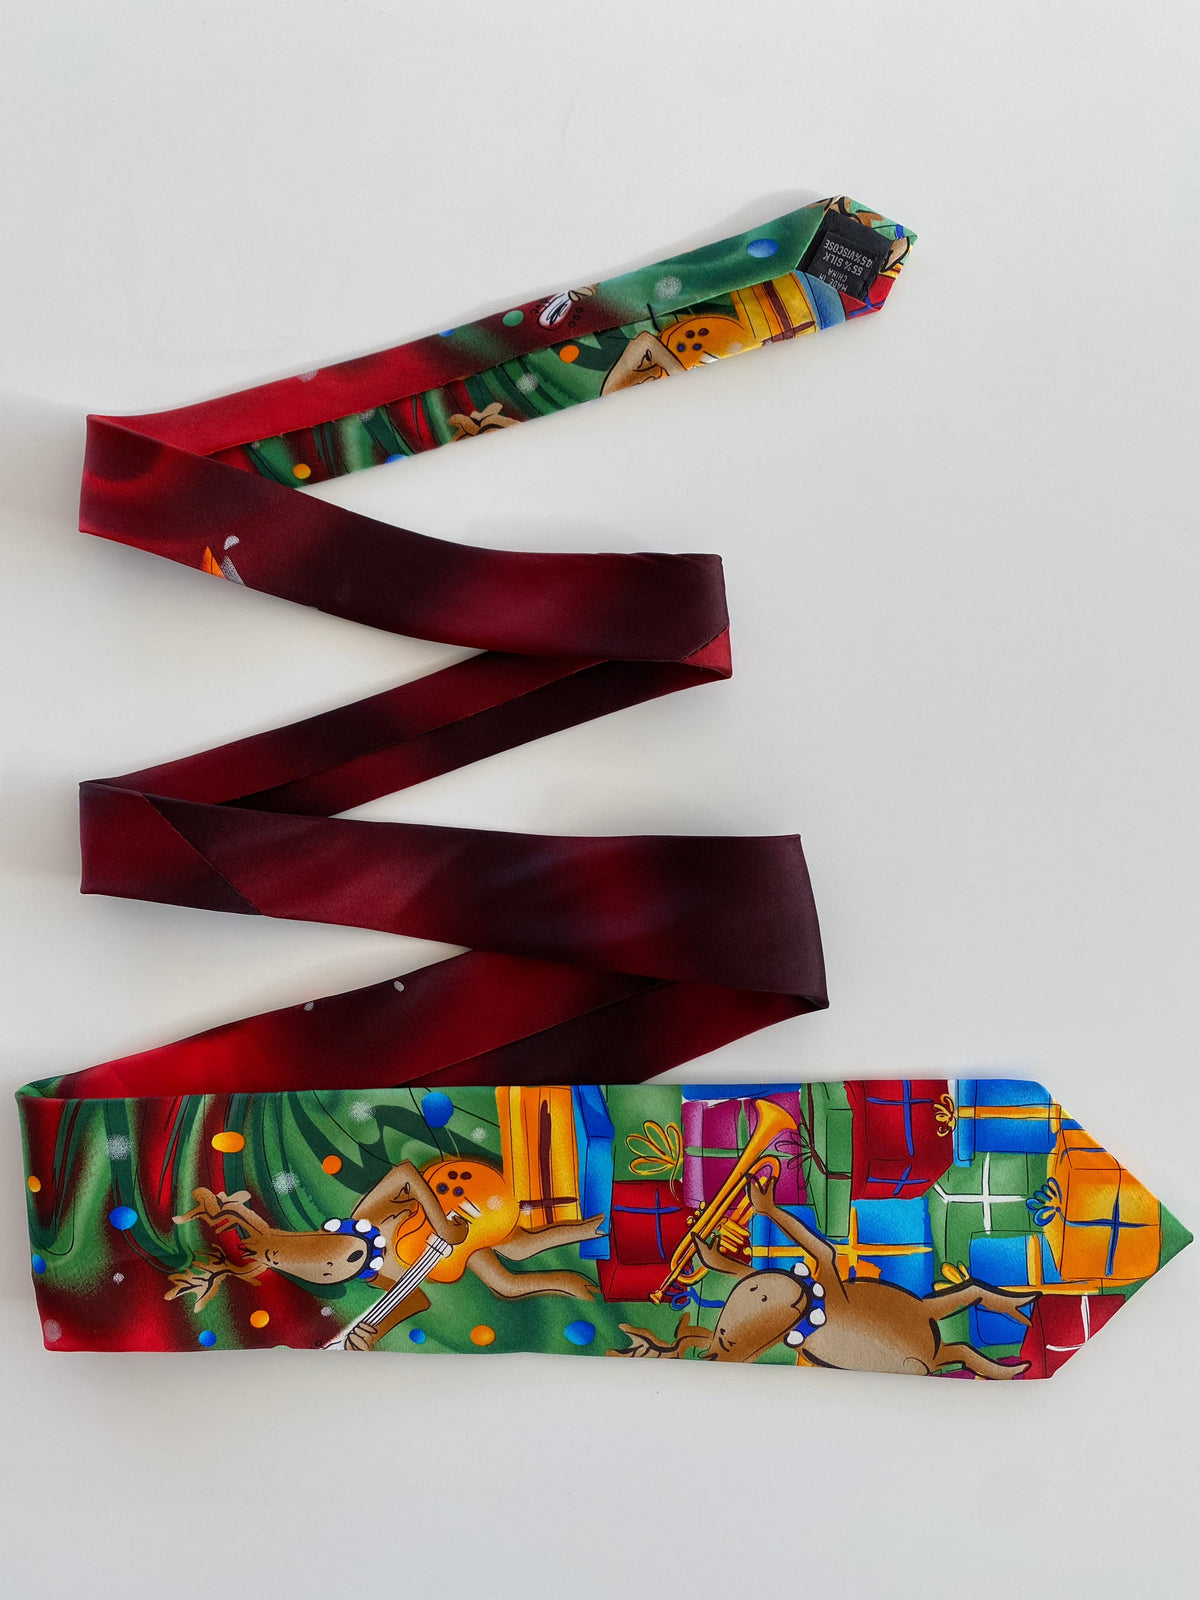 J.CARCIA Christmas Tie - Balagan Vintage